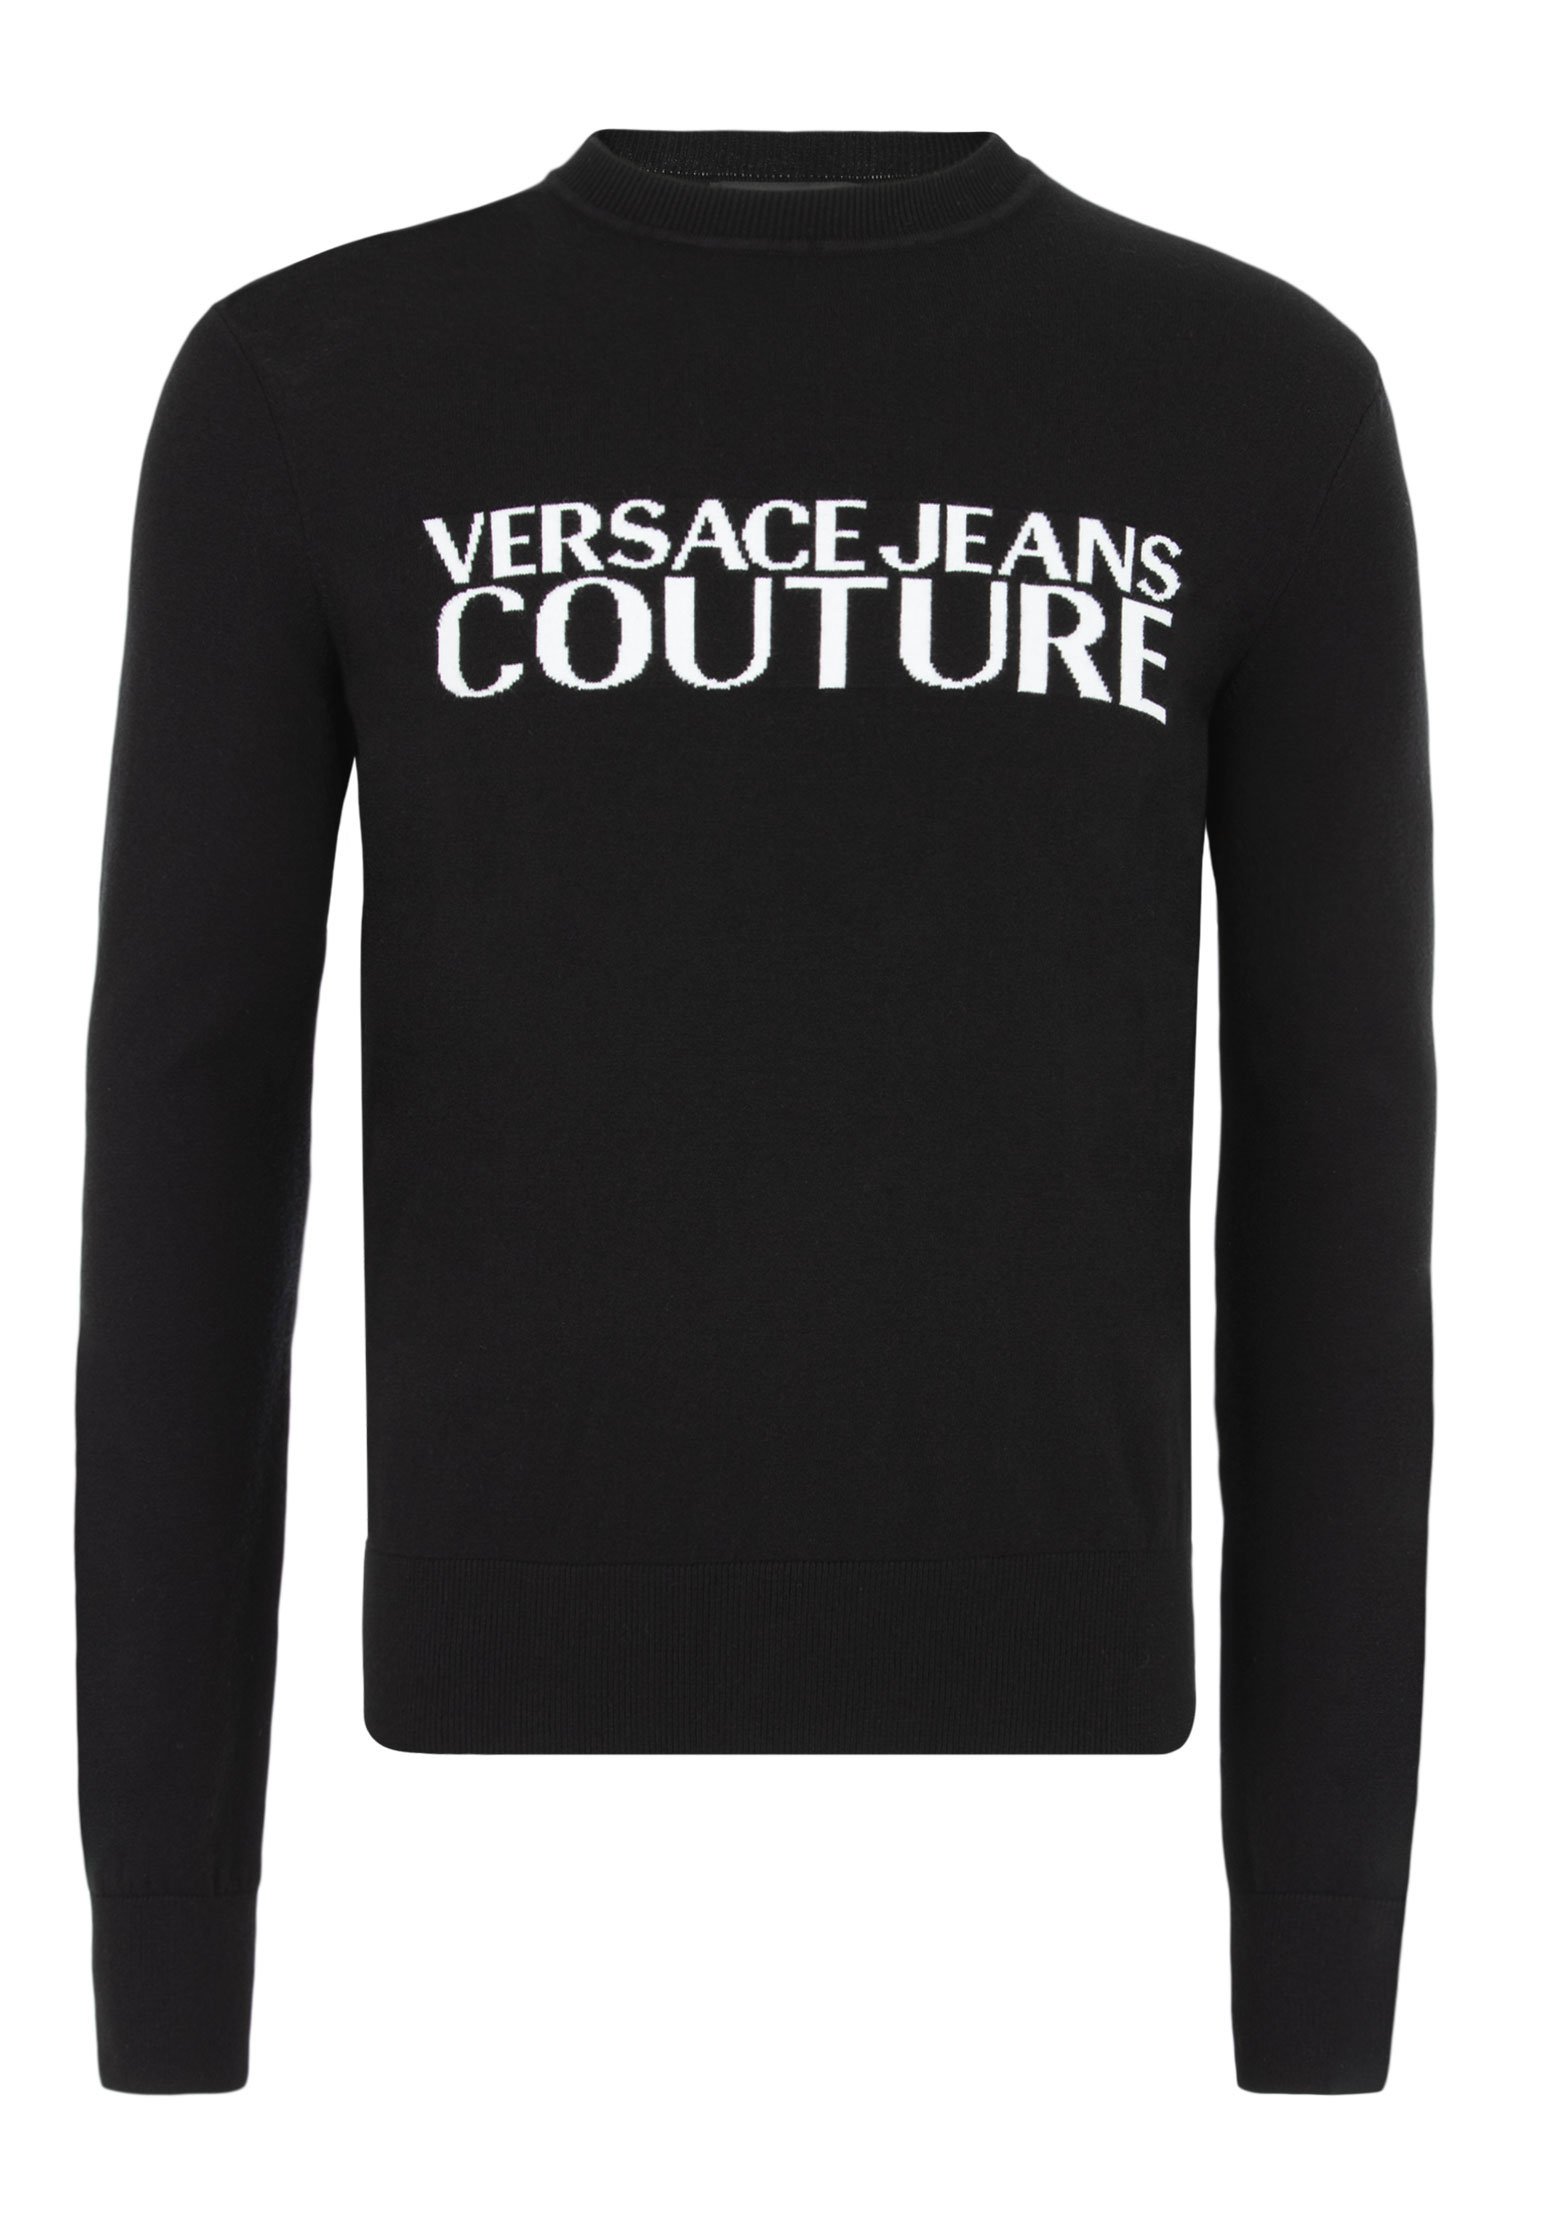 Джемпер мужской Versace Jeans Couture 123544 черный L